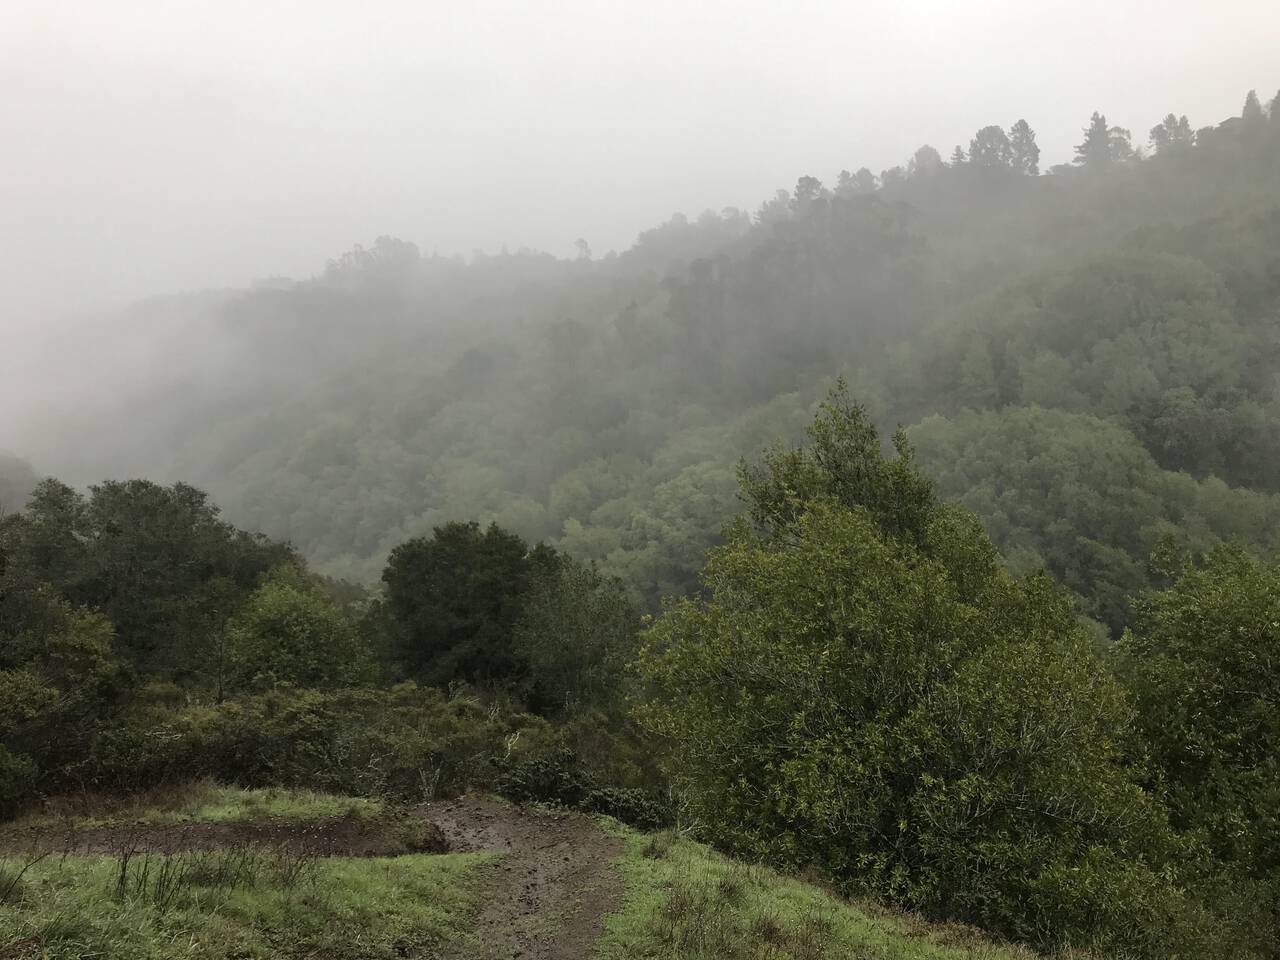 Looking across Huckleberry Regional Preserve, we see redwood treetops shrouded in fog